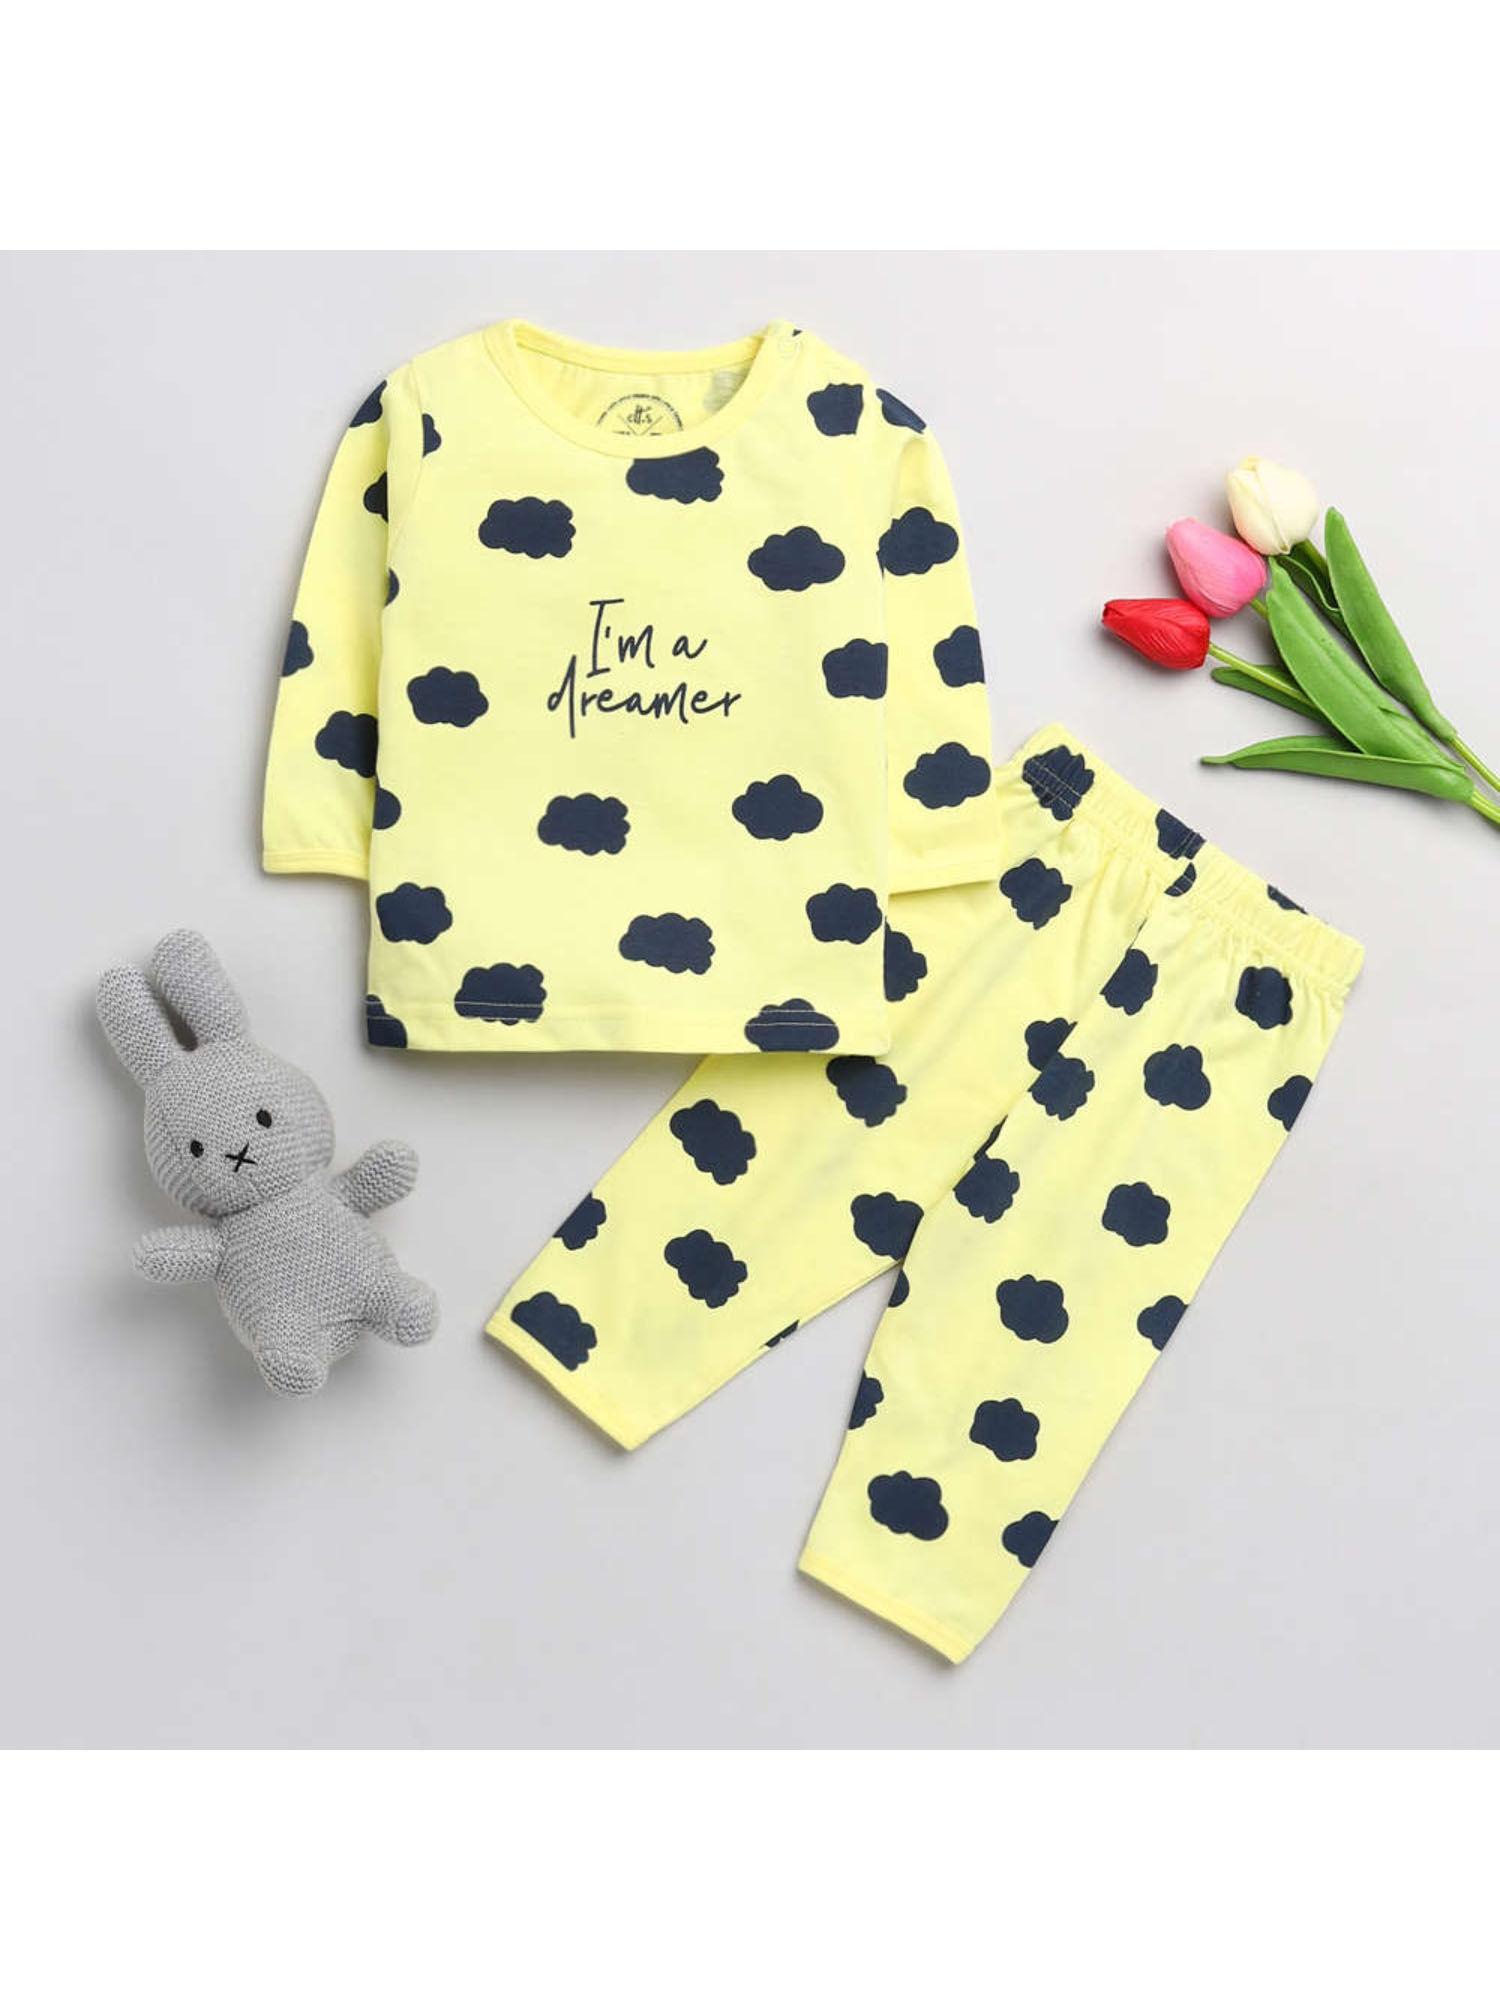 cloud printed t-shirt & pyjamas (set of 2)